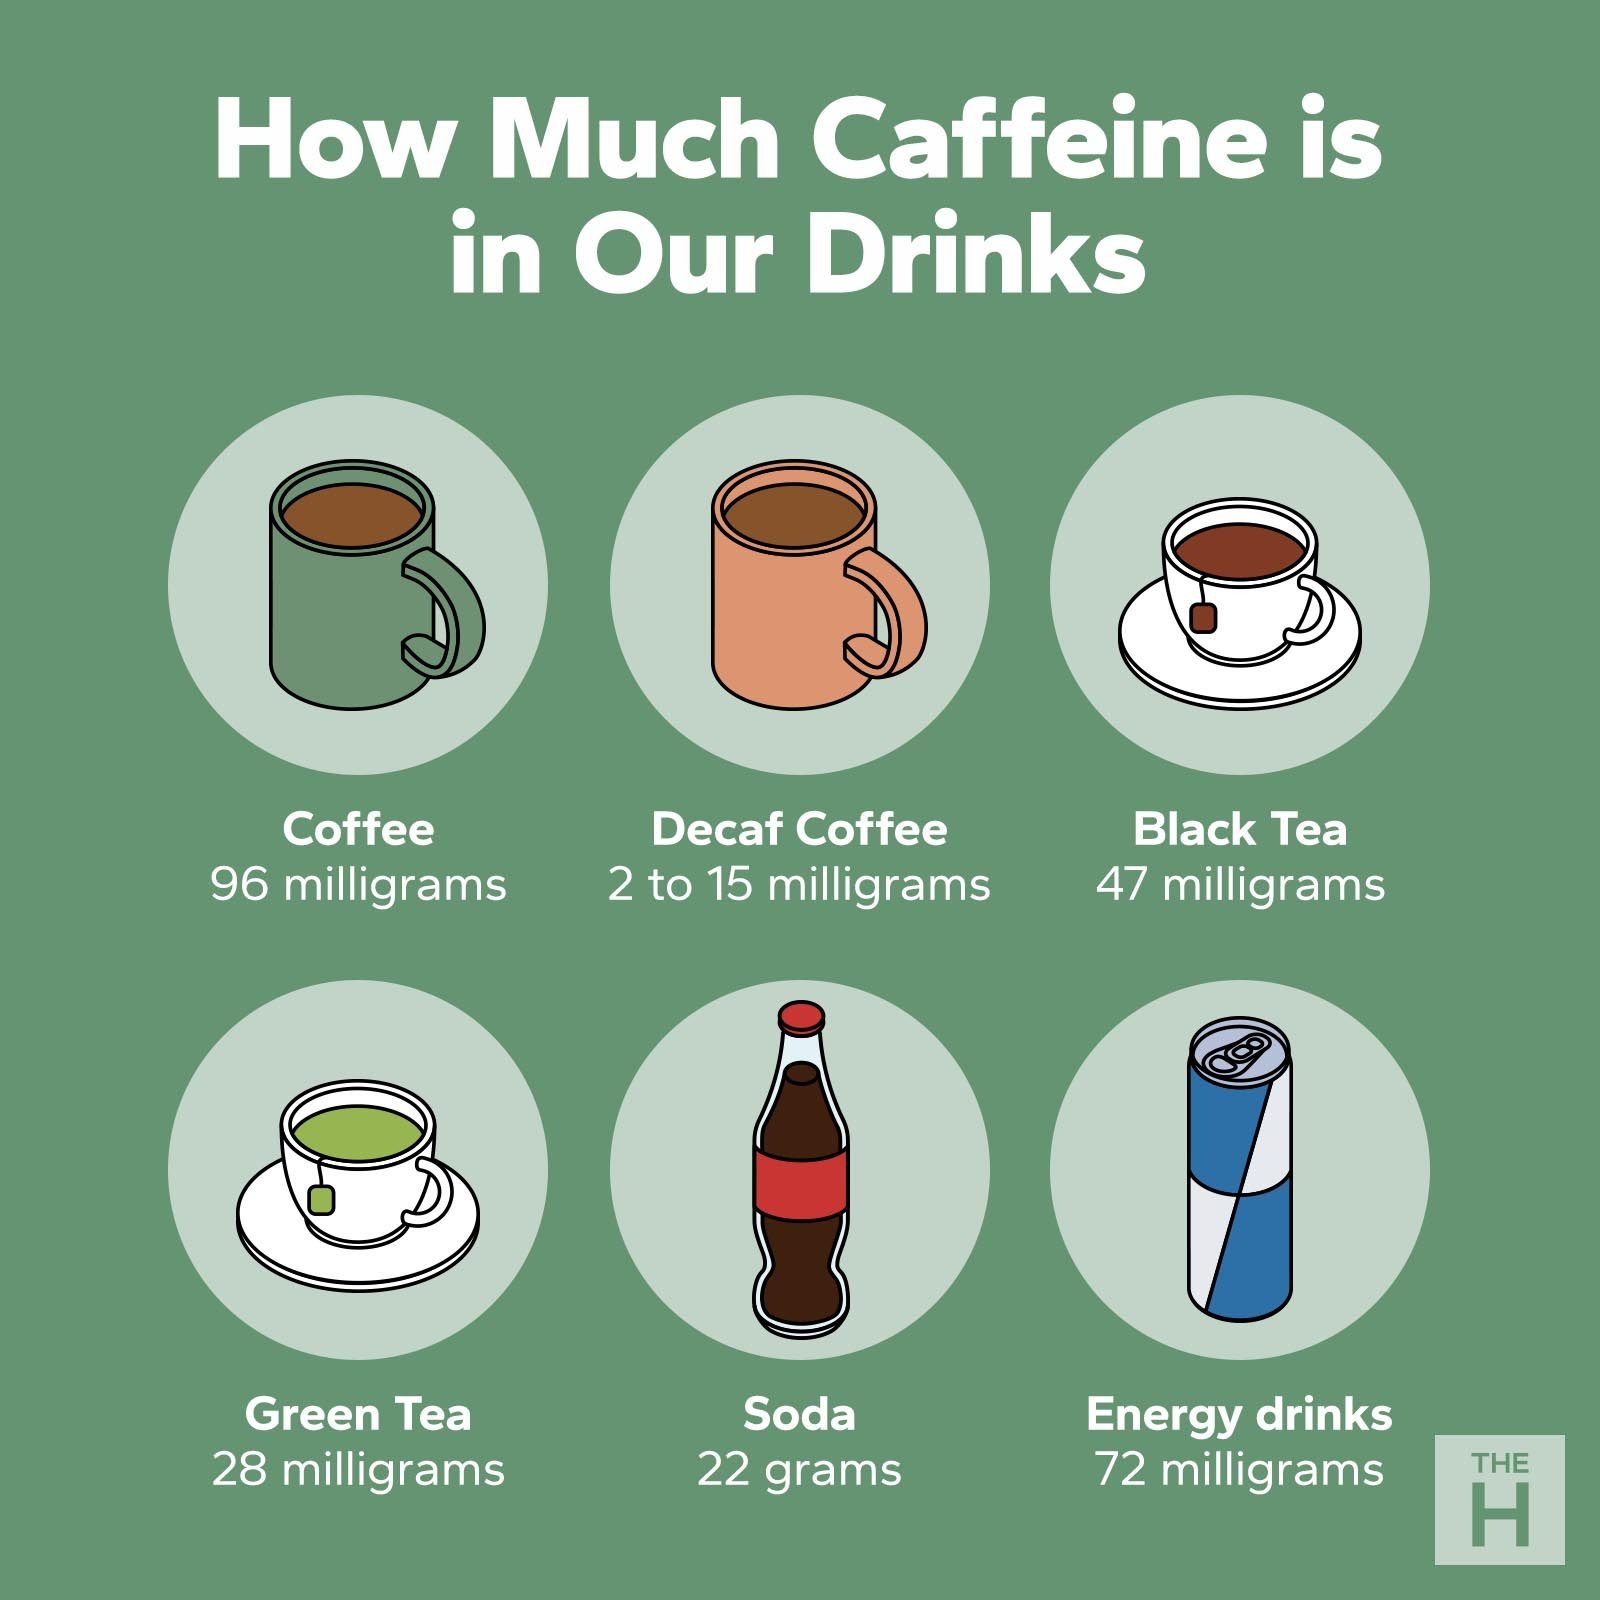 Caffeine in Average Decaf Coffee